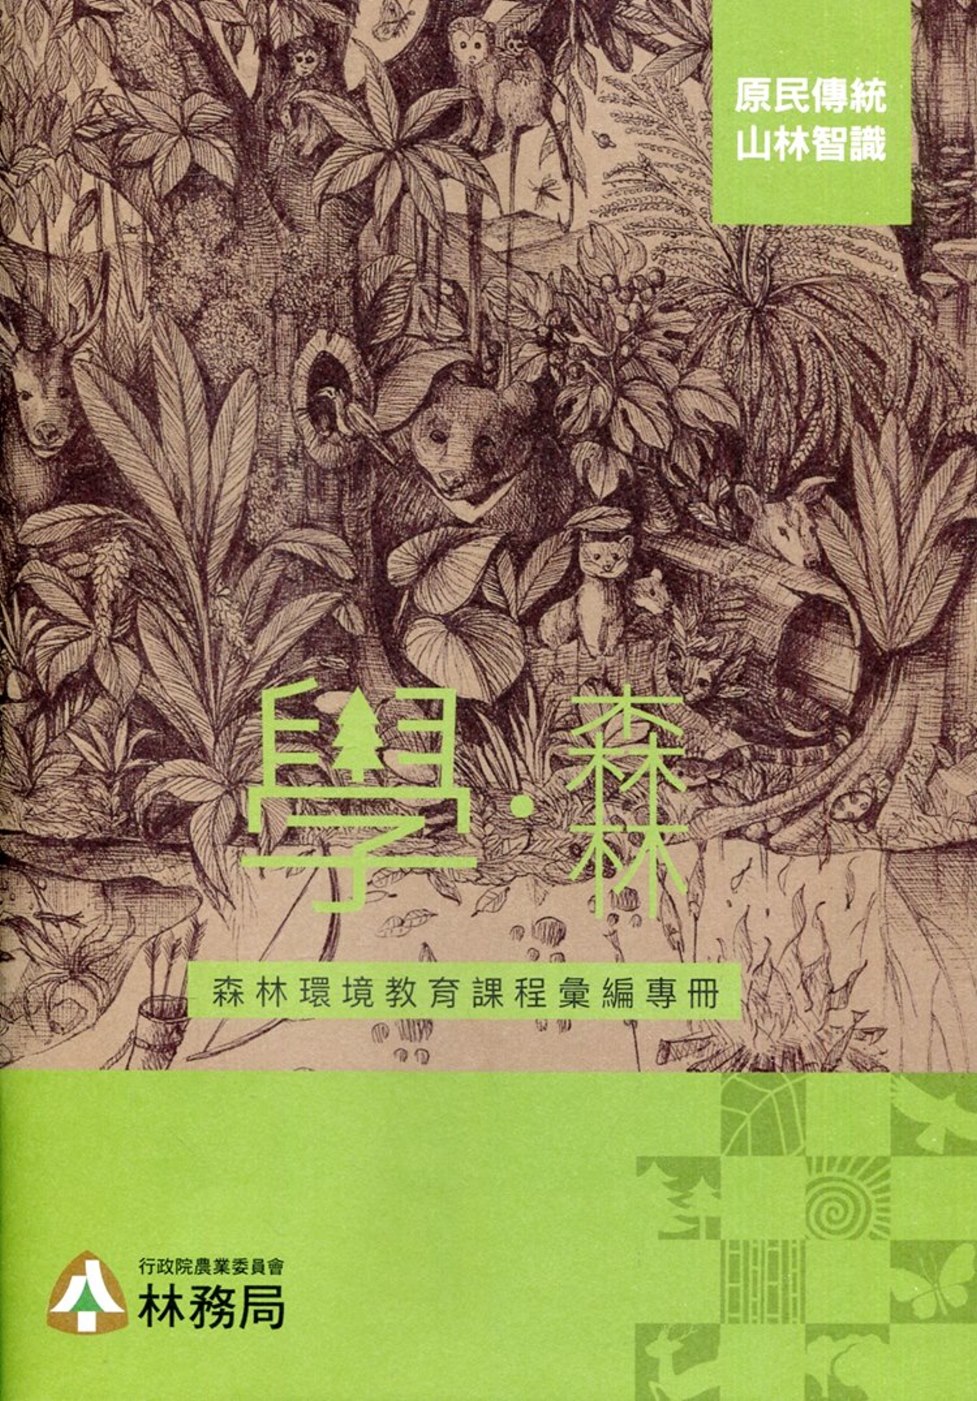 學‧森林：森林環境教育課程彙編專冊